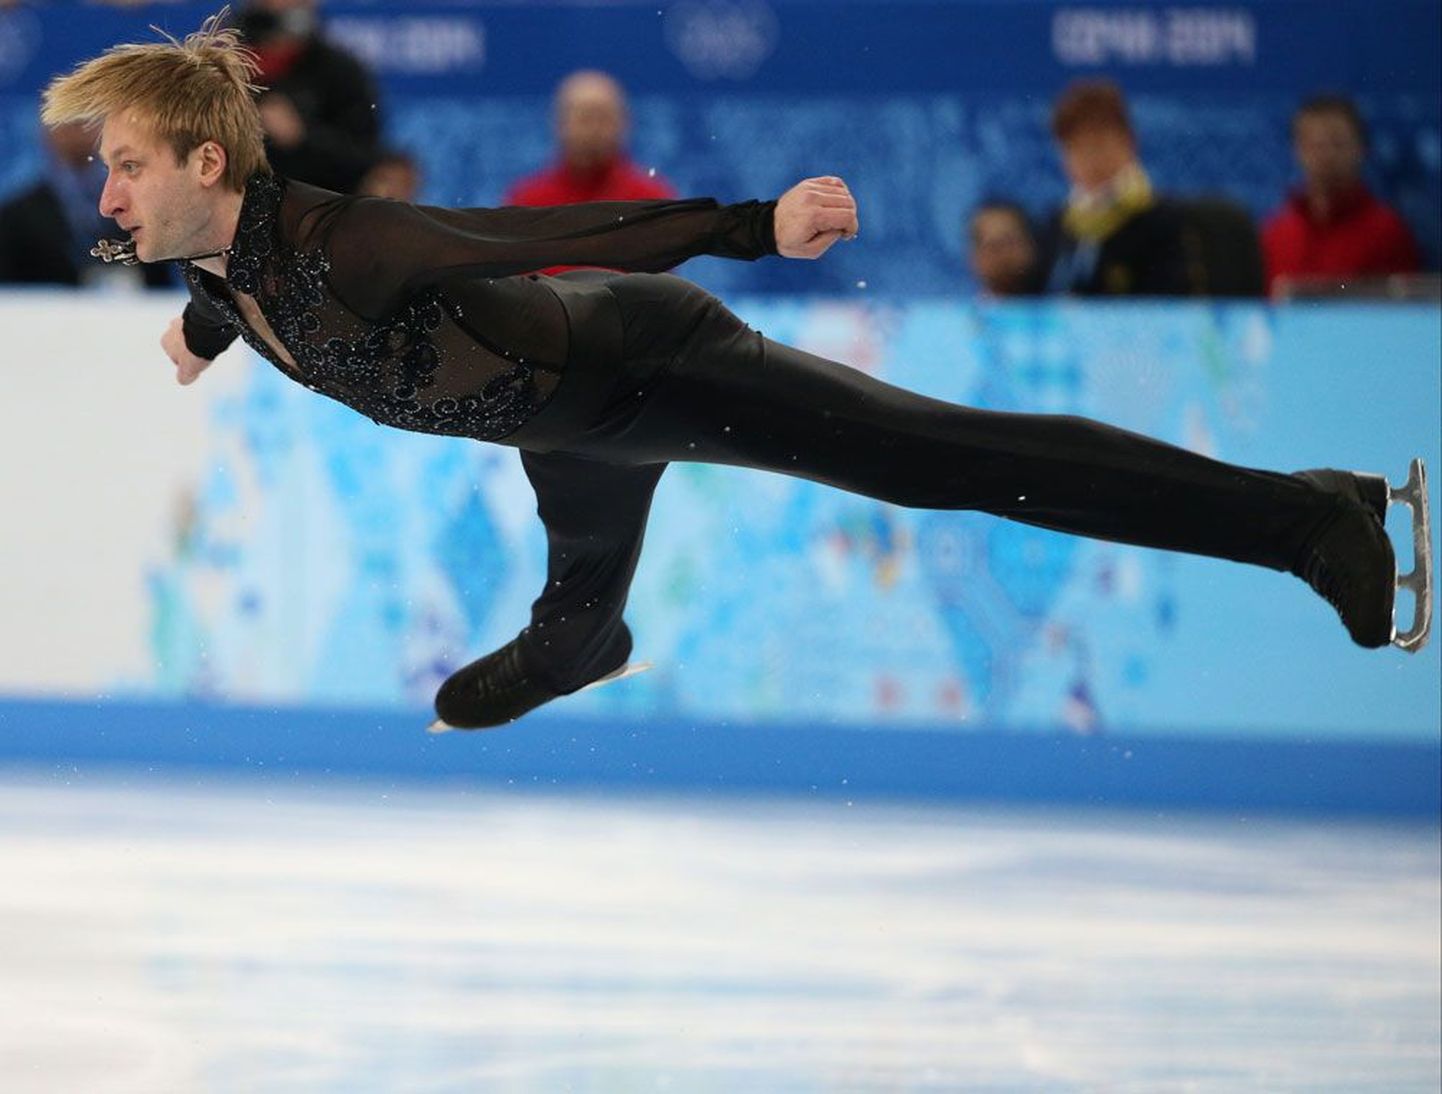 Venemaa superstaar Jevgeni Pljuštšenko  töö tasend koduse olümpia nimel uuesti medalinõudlejaks.